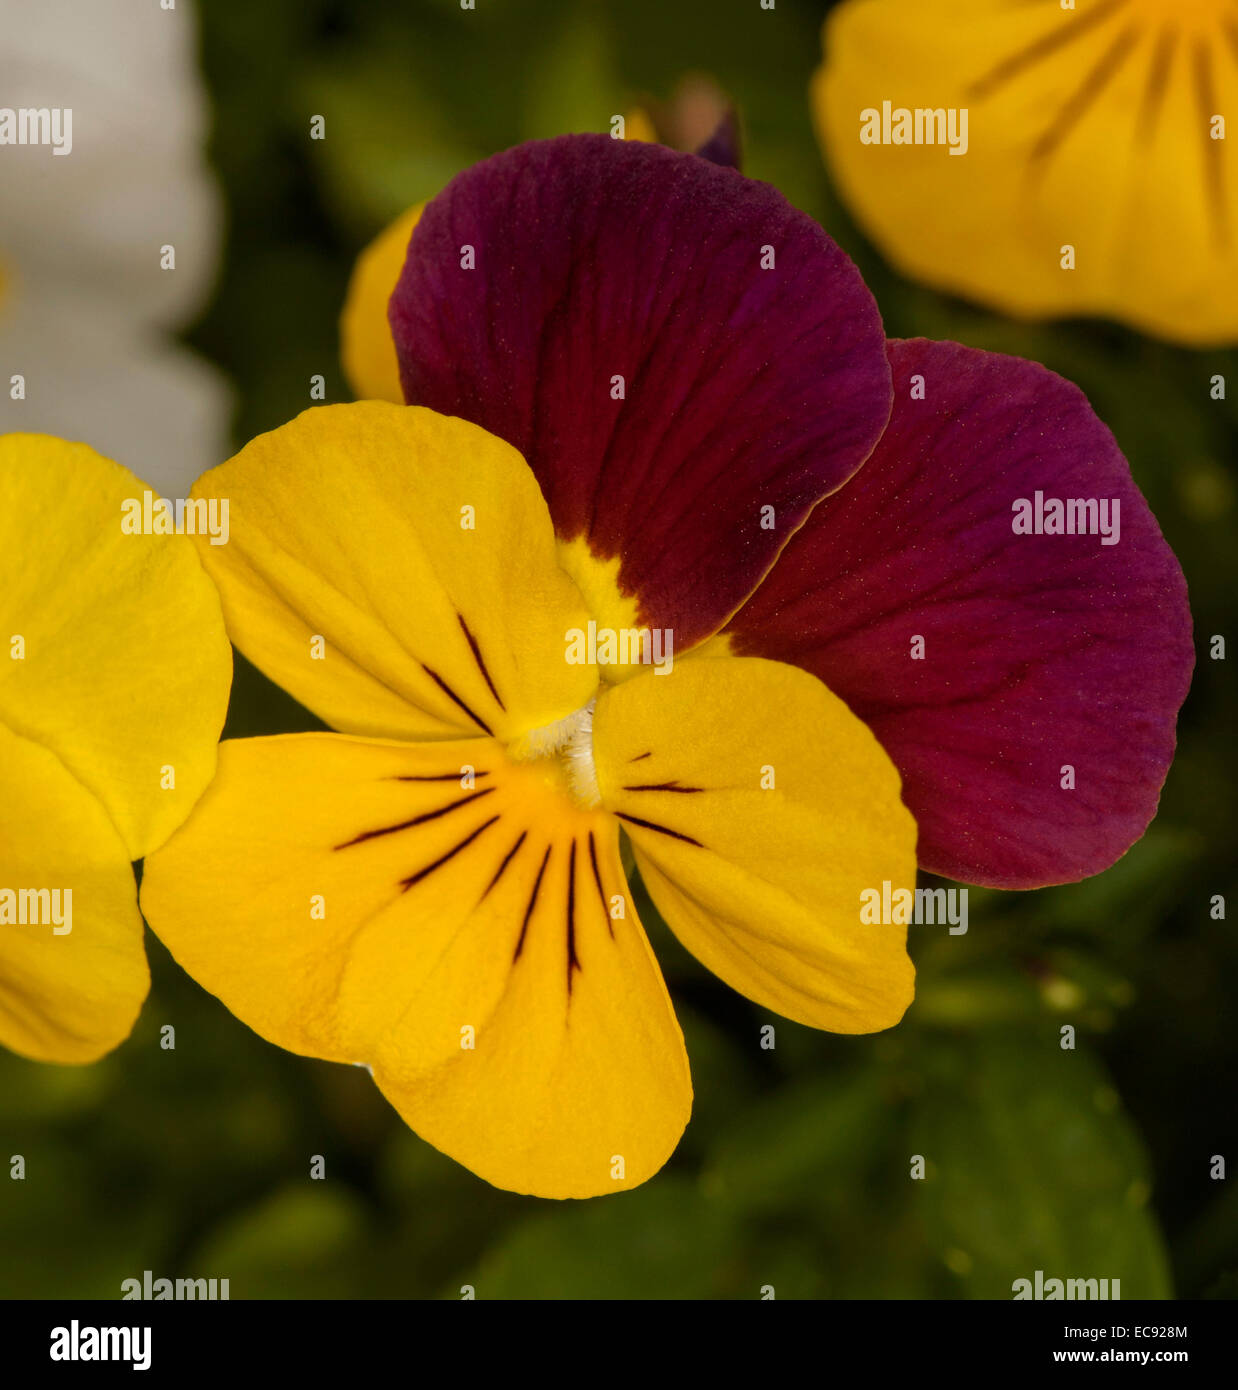 Rouge foncé et fleurs jaune vif de pansy avec arrière-plan de mini feuillage vert foncé Banque D'Images